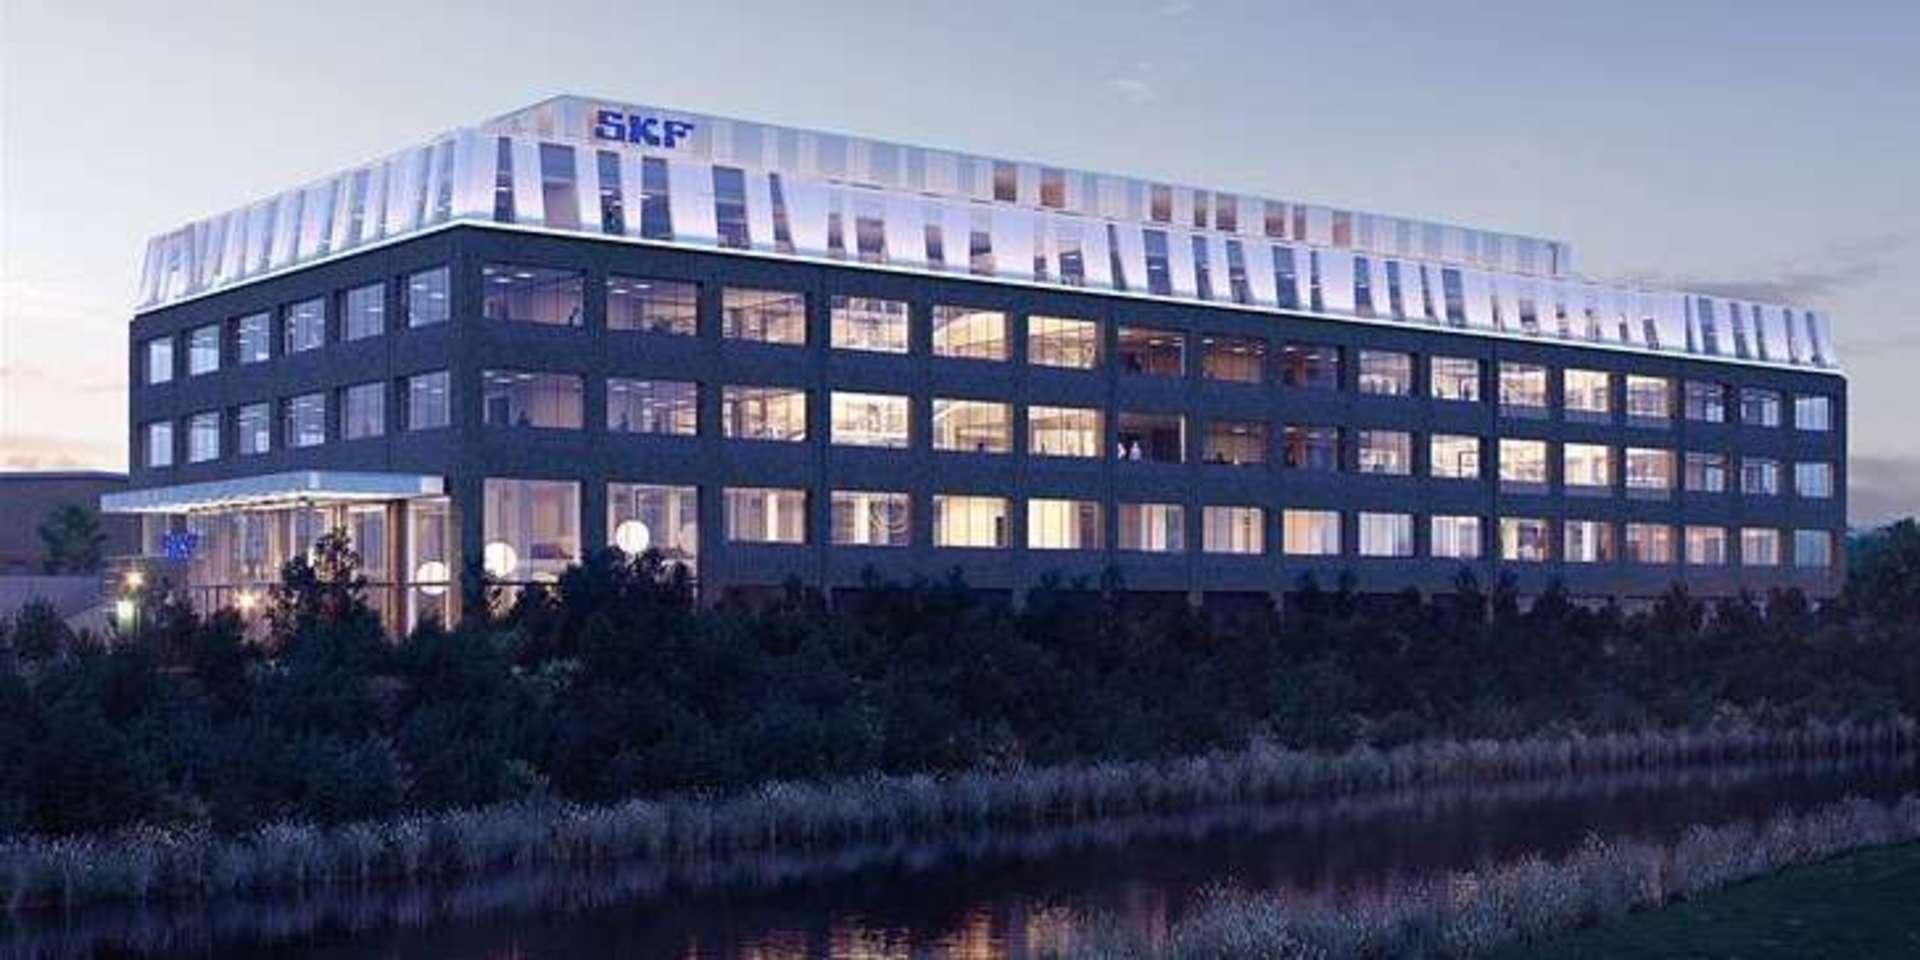 Så här ska SKF:s nya huvudkontor i Göteborg se ut, enligt skissen.